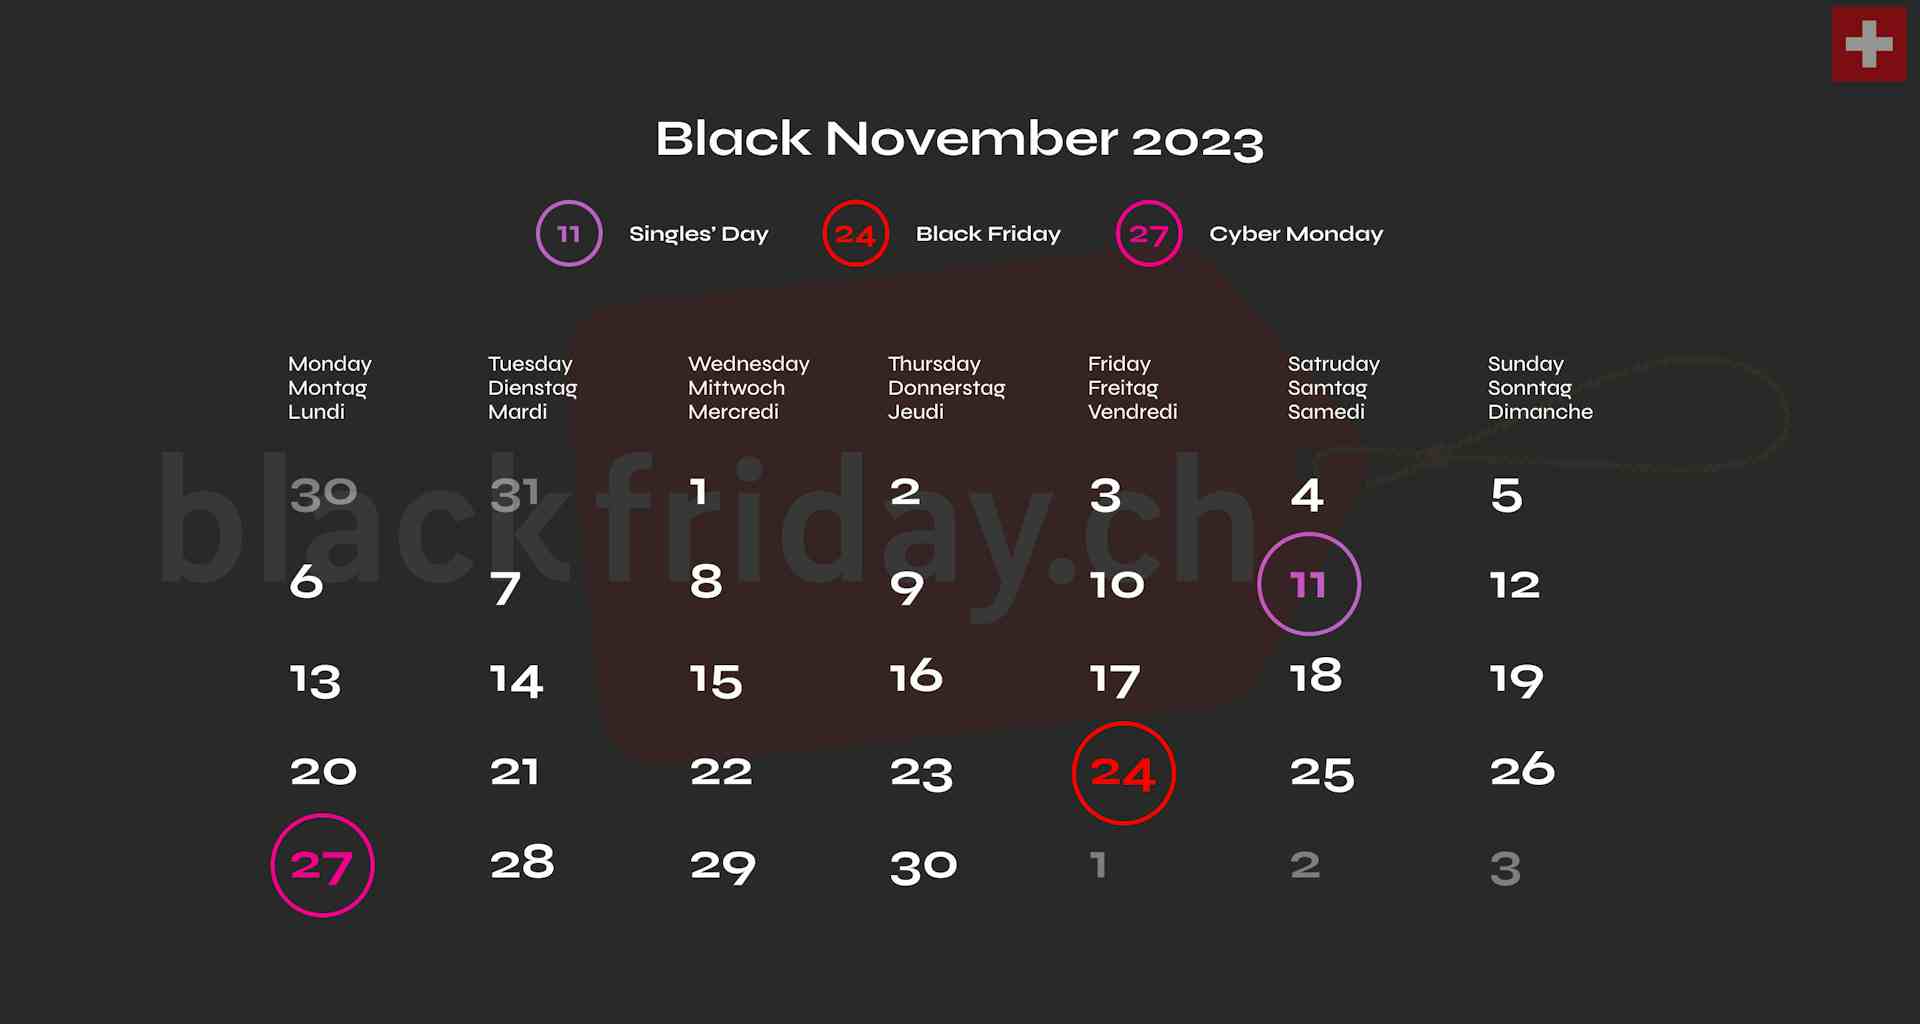 BLACK NOVEMBER 2023 SCHWEIZ, BLACK FRIDAY, CYBER MONDAY SINGLE'S DAY